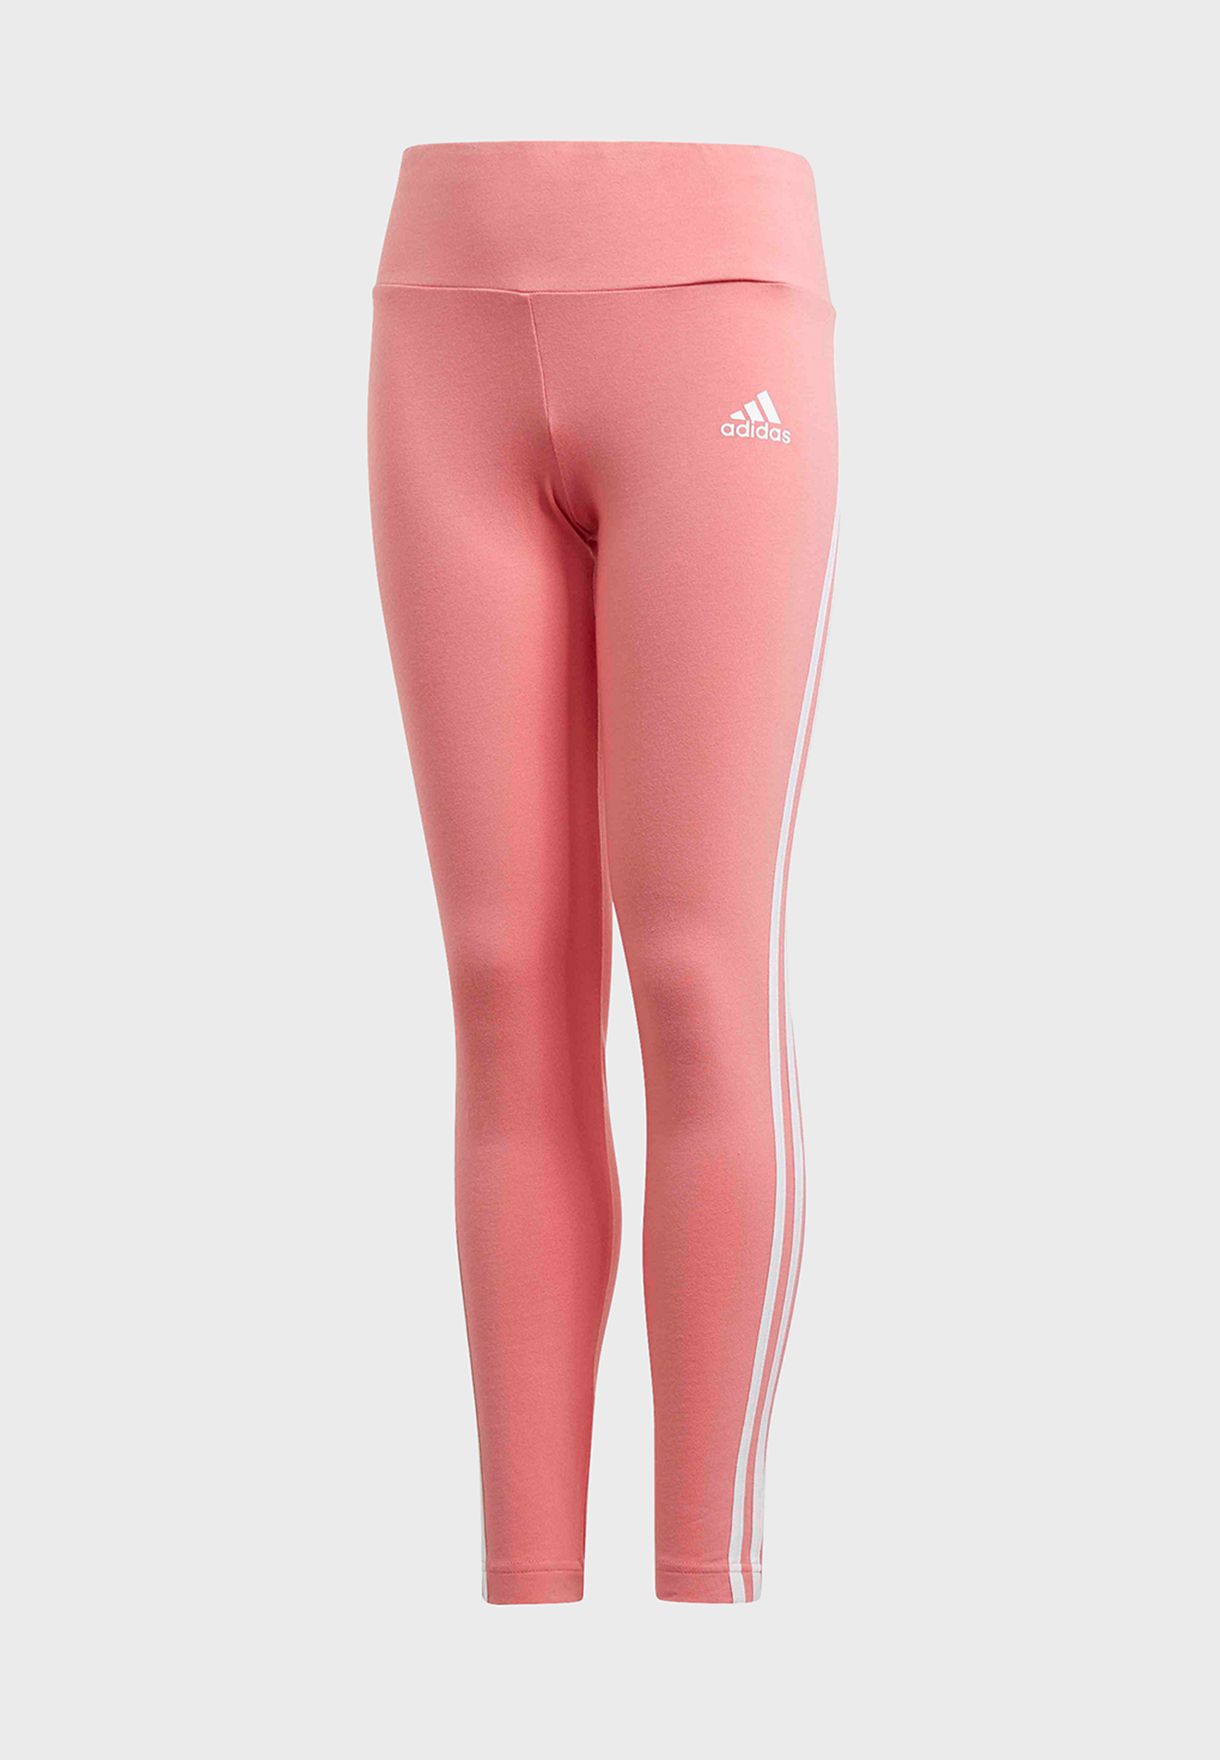 adidas pink stripe leggings